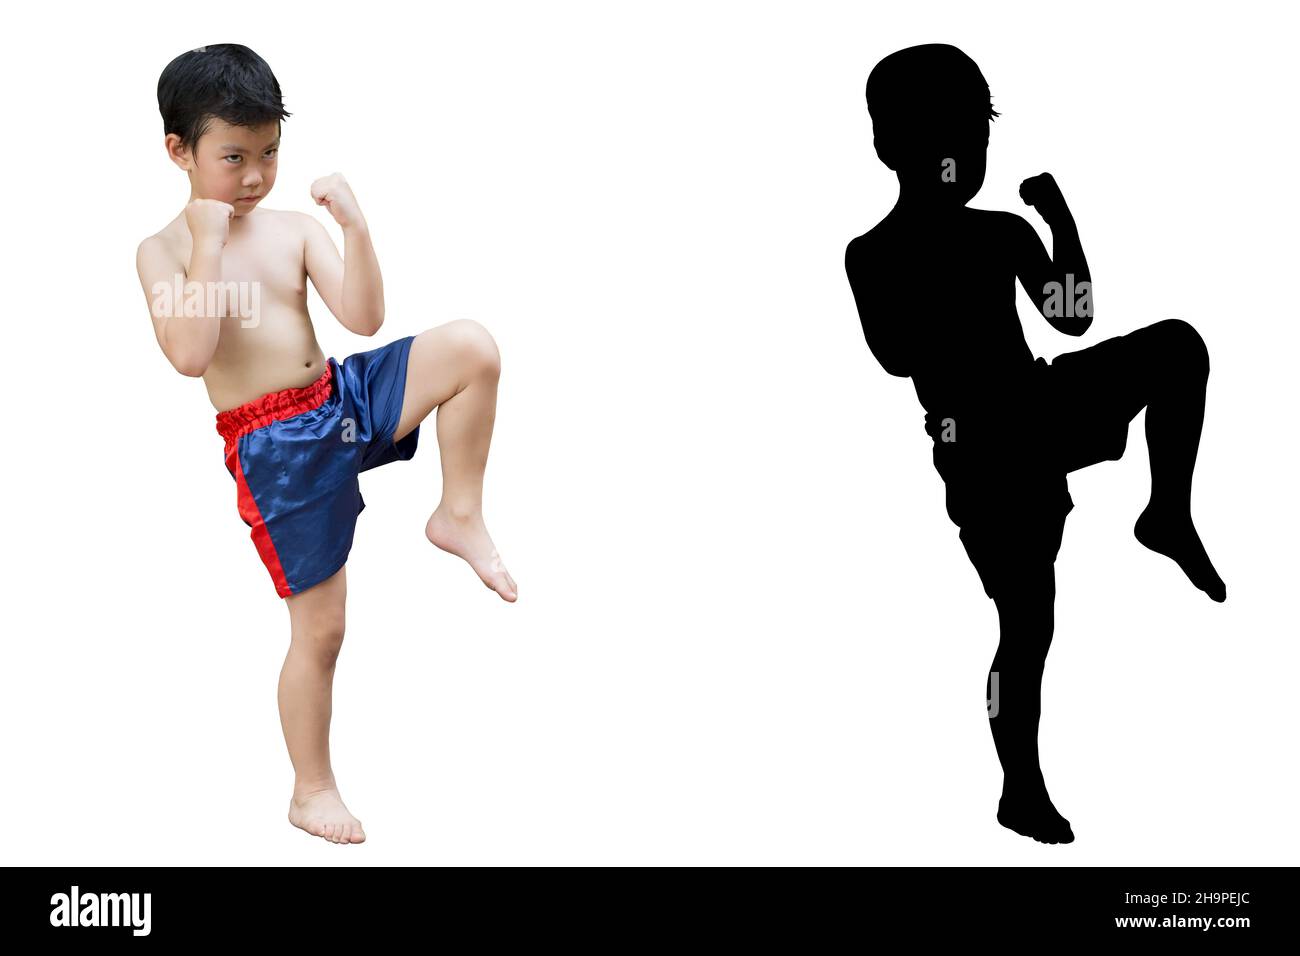 Kick boxing boy immagini e fotografie stock ad alta risoluzione - Alamy